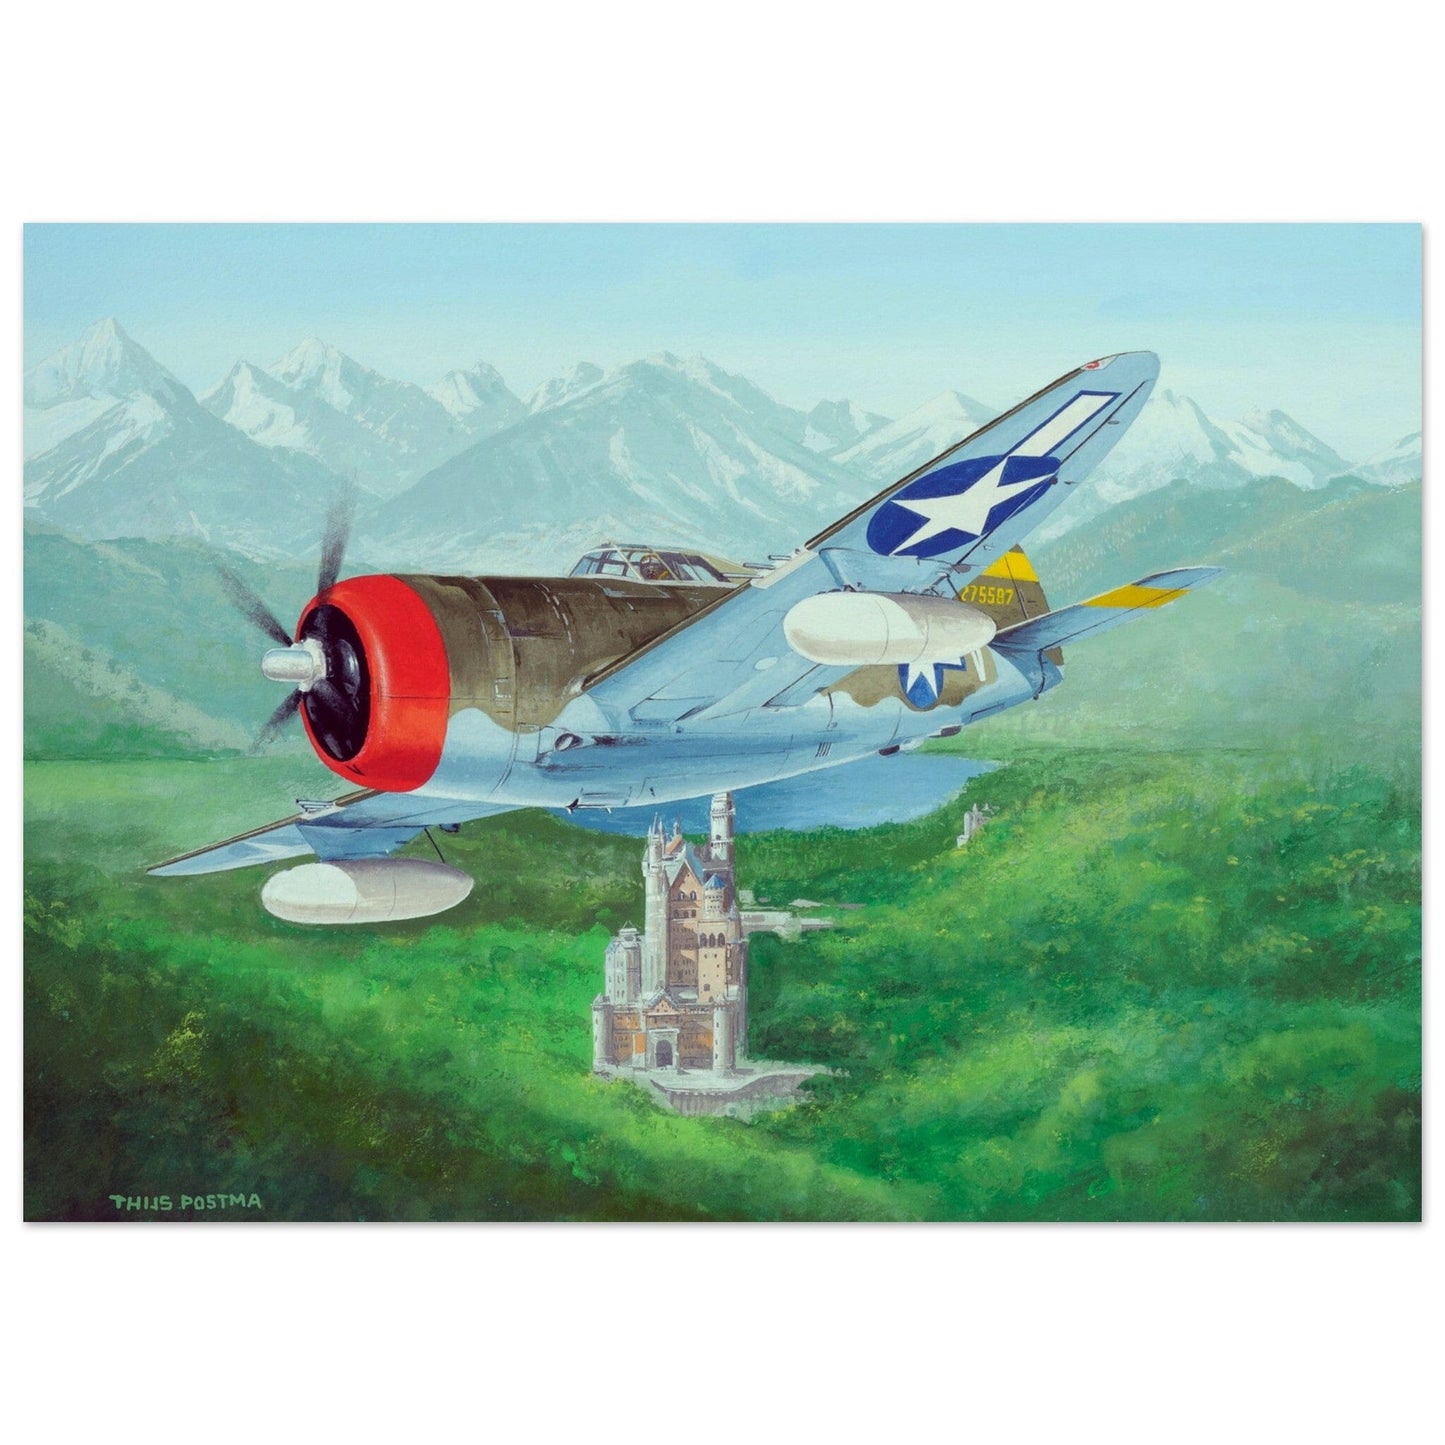 Thijs Postma - Poster - Republic Thunderbolt USAF Over Schloss Neuschwanstein Poster Only TP Aviation Art 50x70 cm / 20x28″ 